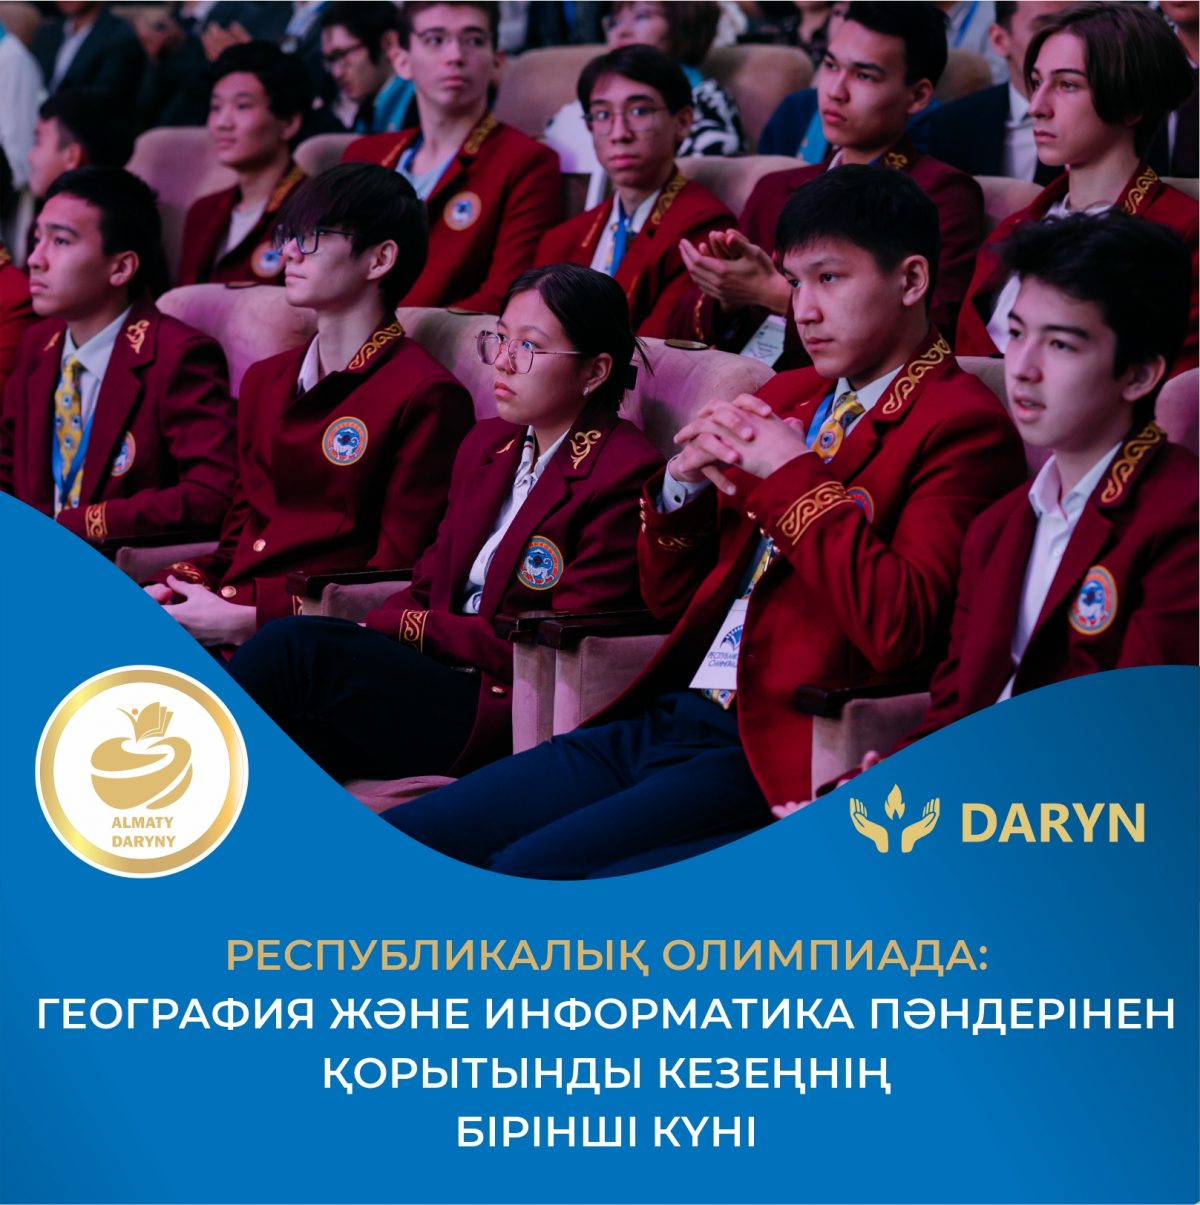 Алматы қаласының Haileybury Almaty мектебінде 9-11(12) сынып оқушылары арасында география және информатика пәндерінен республикалық олимпиаданың қорытынды кезеңінің бірінші туры басталды